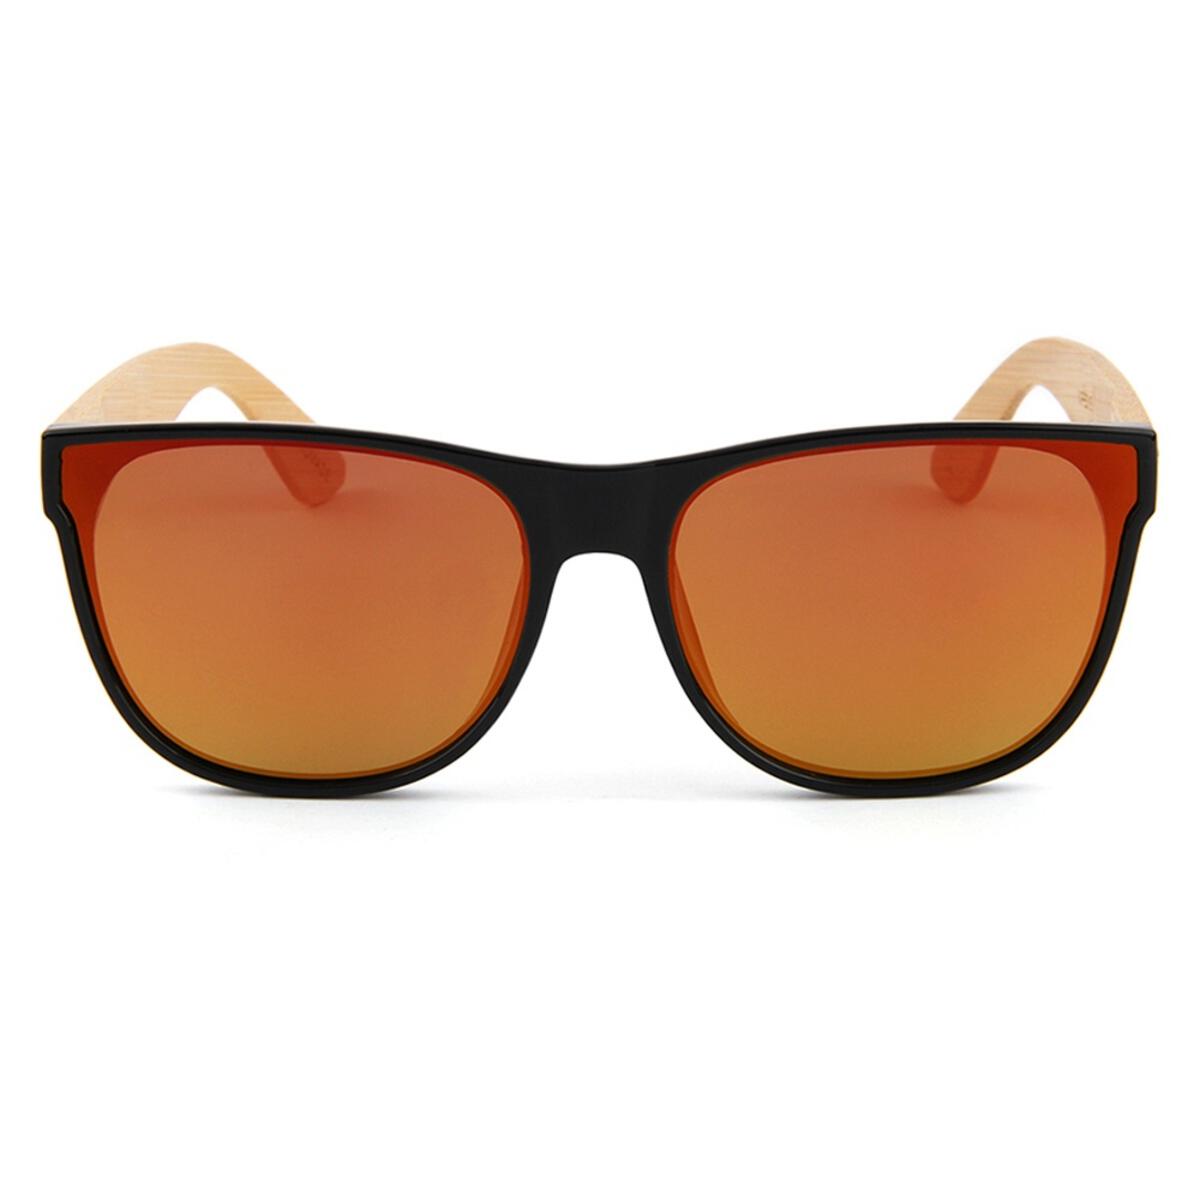 Gold Papaya Sunglasses